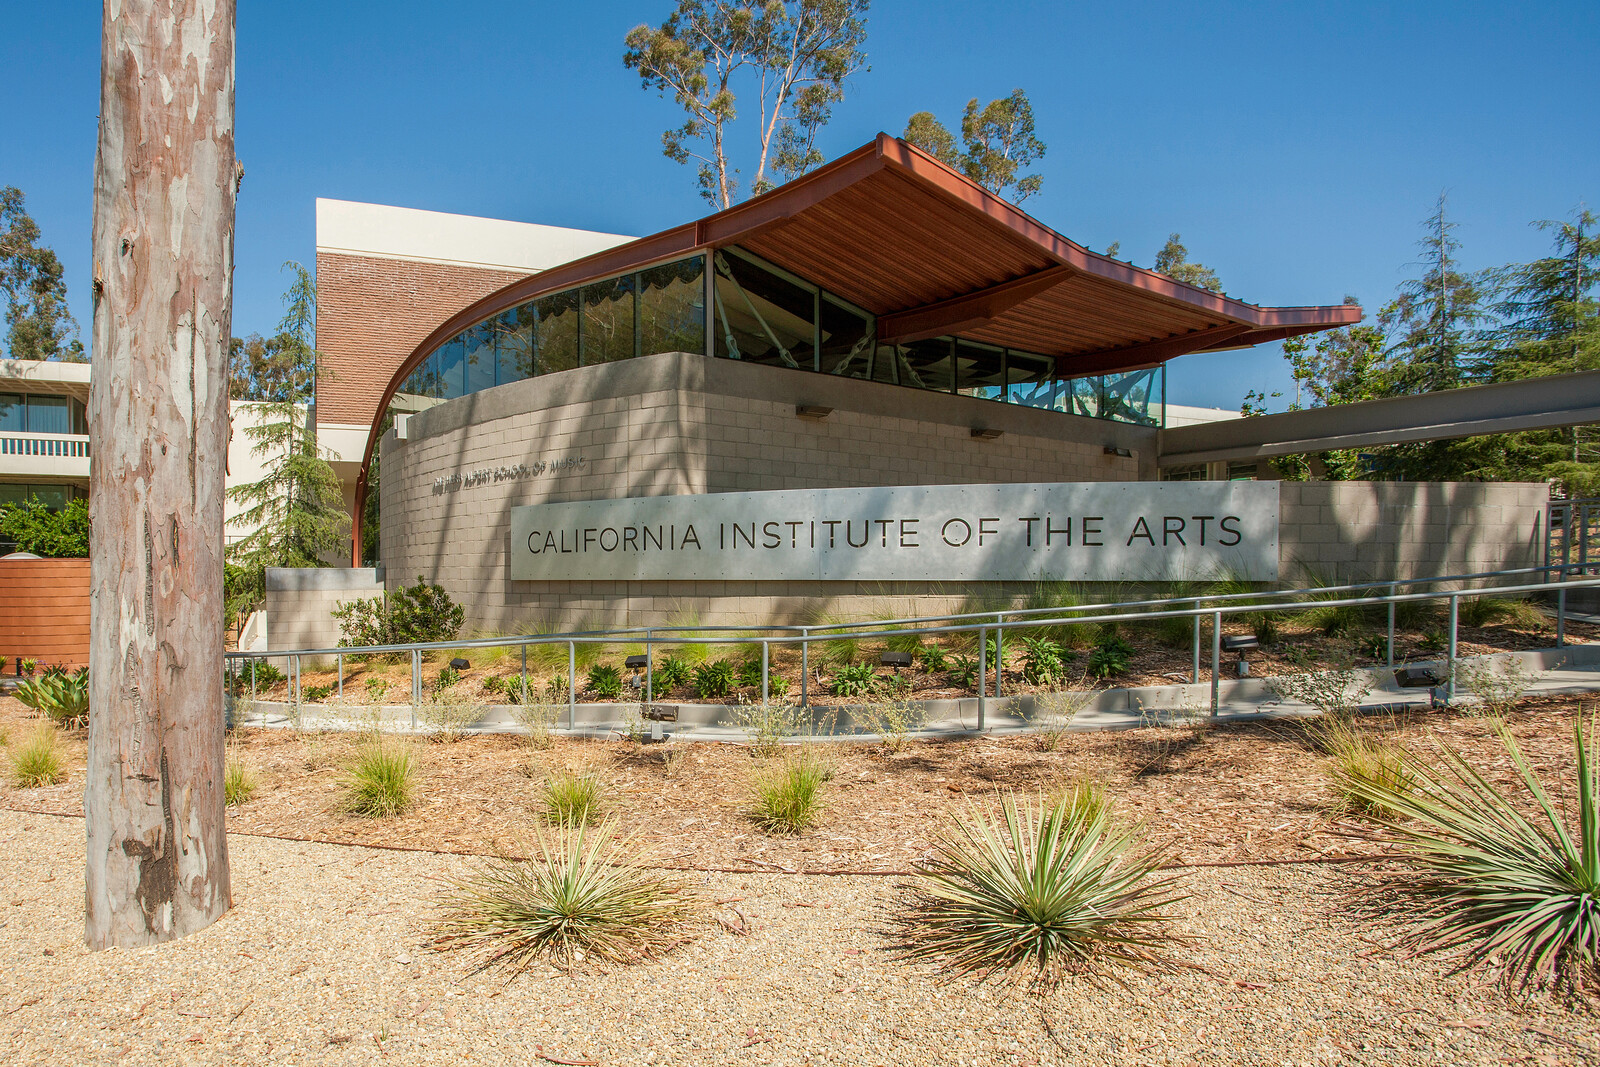 California Institute of the Arts (CalArts)